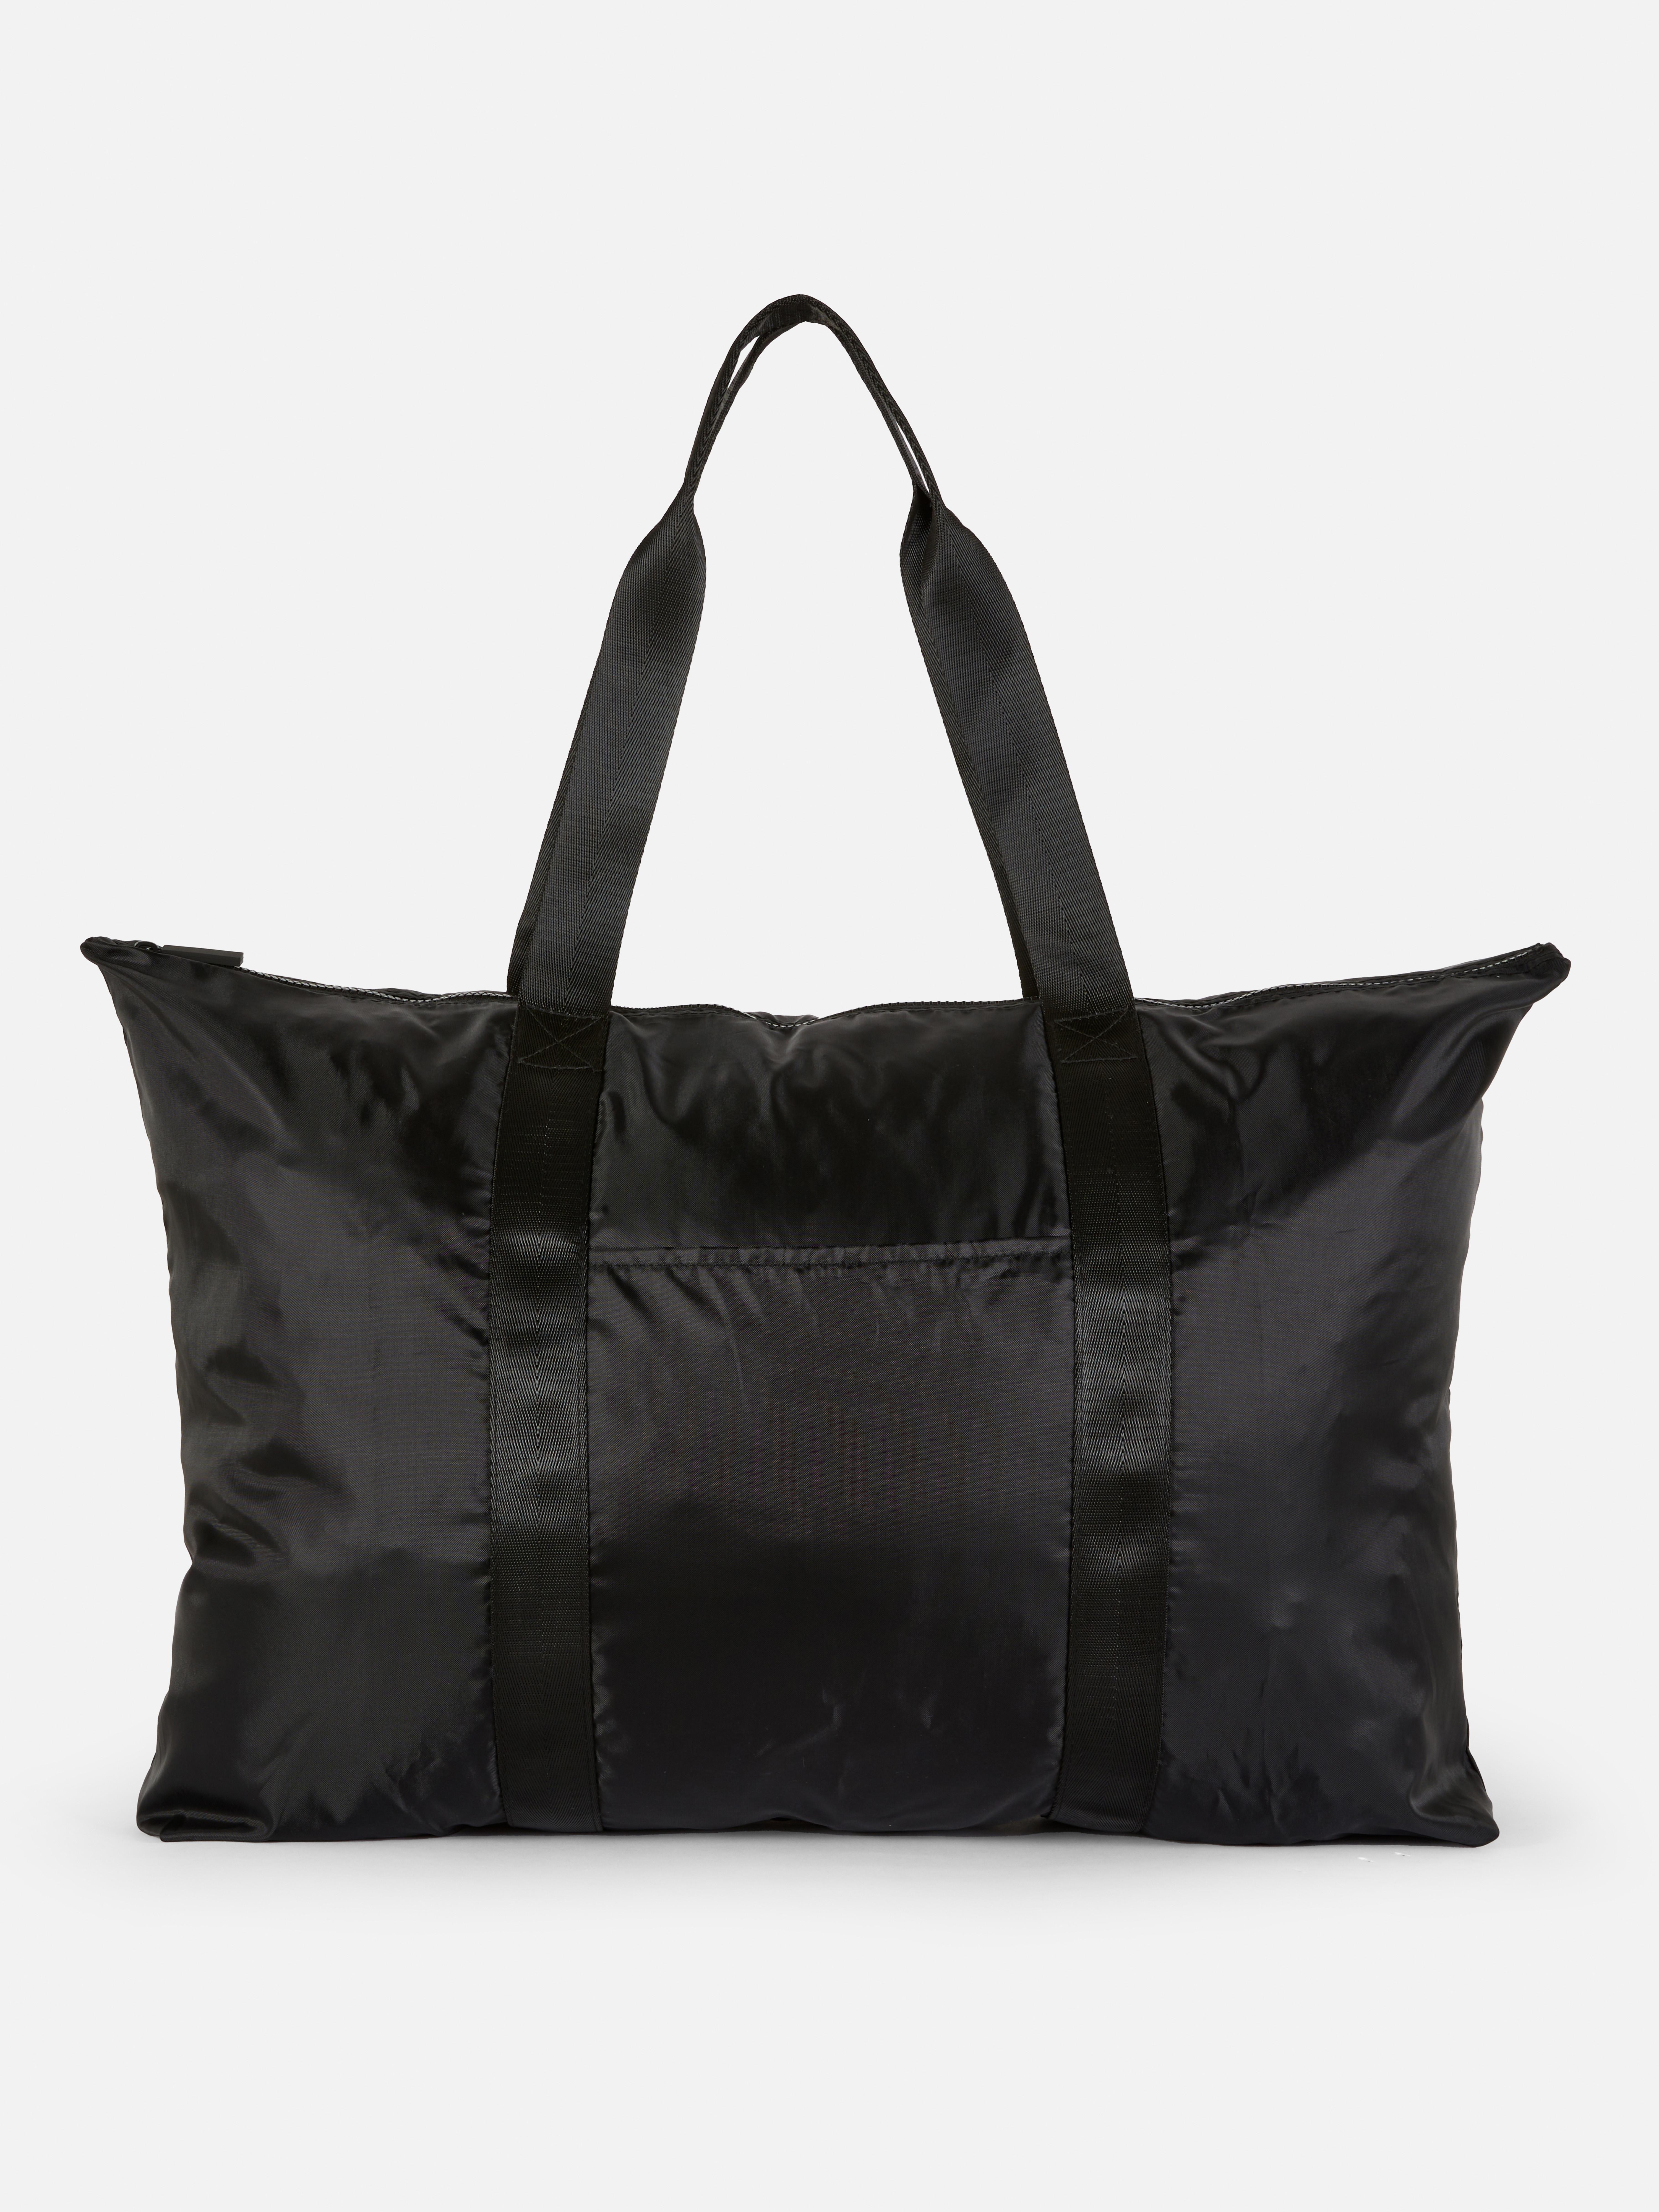 Foldaway Weekender Bag